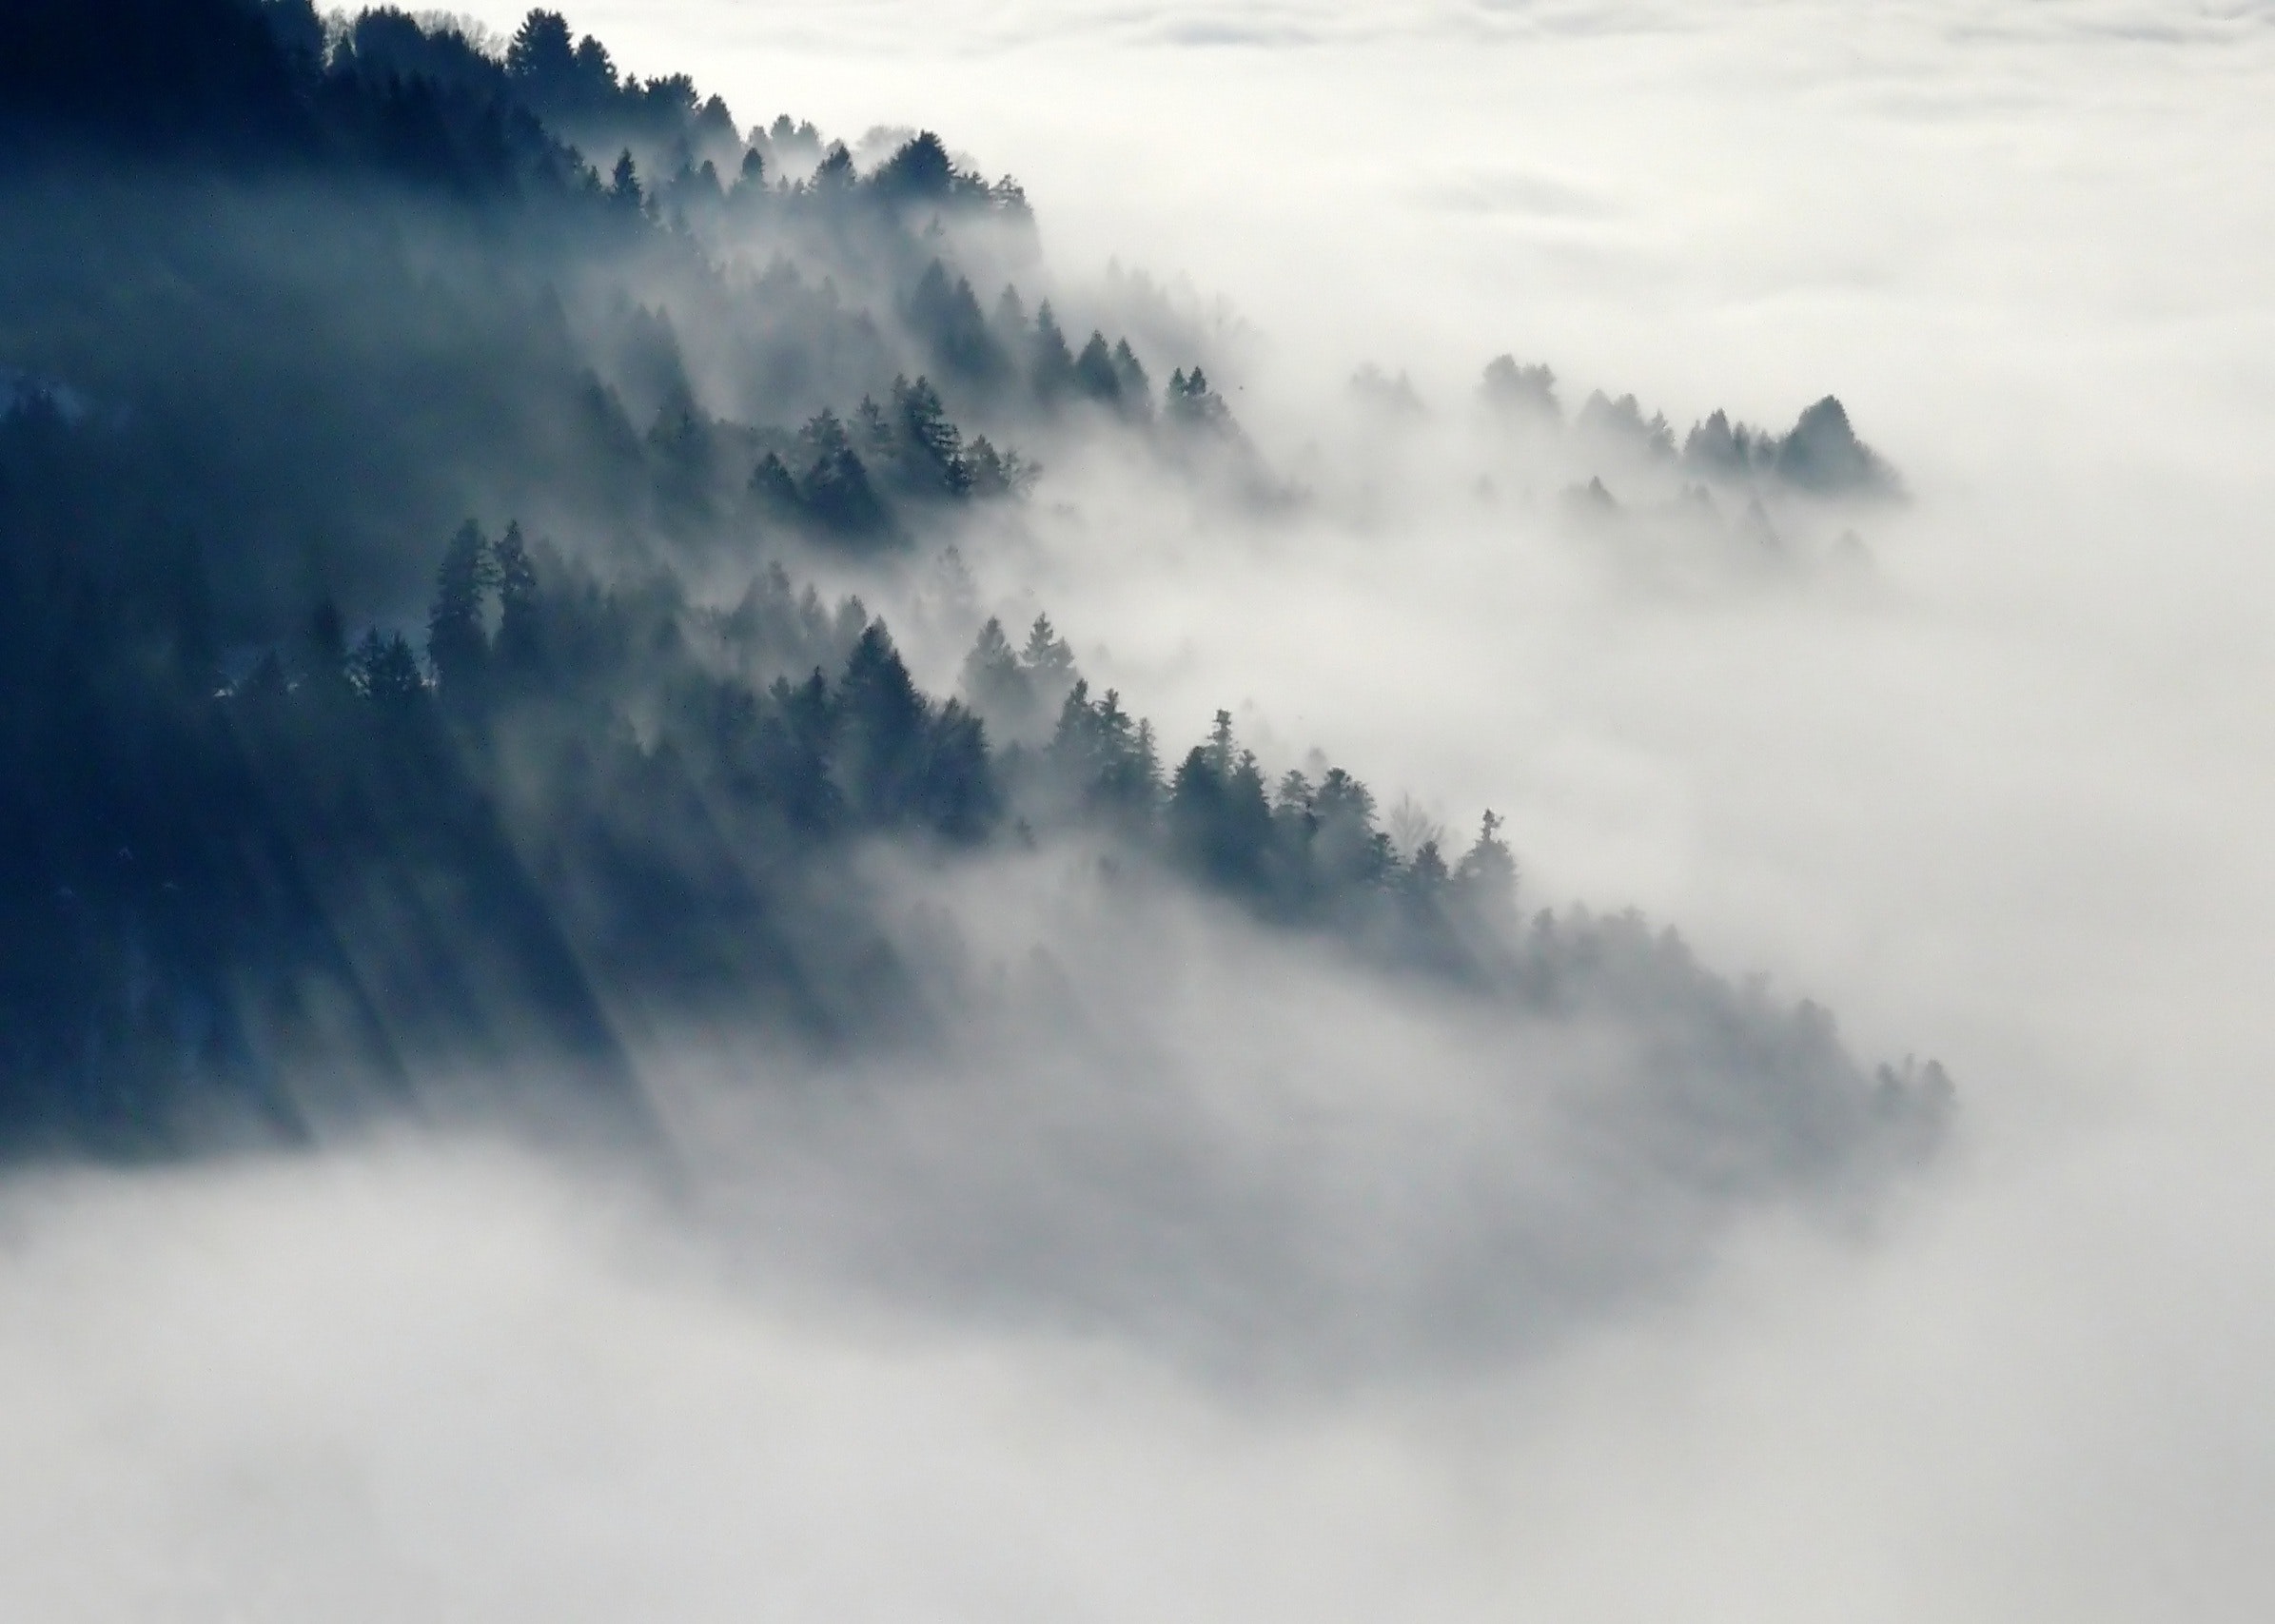 迷雾,晨曦,朦胧美 非常有意境的晨雾景象 超清电脑